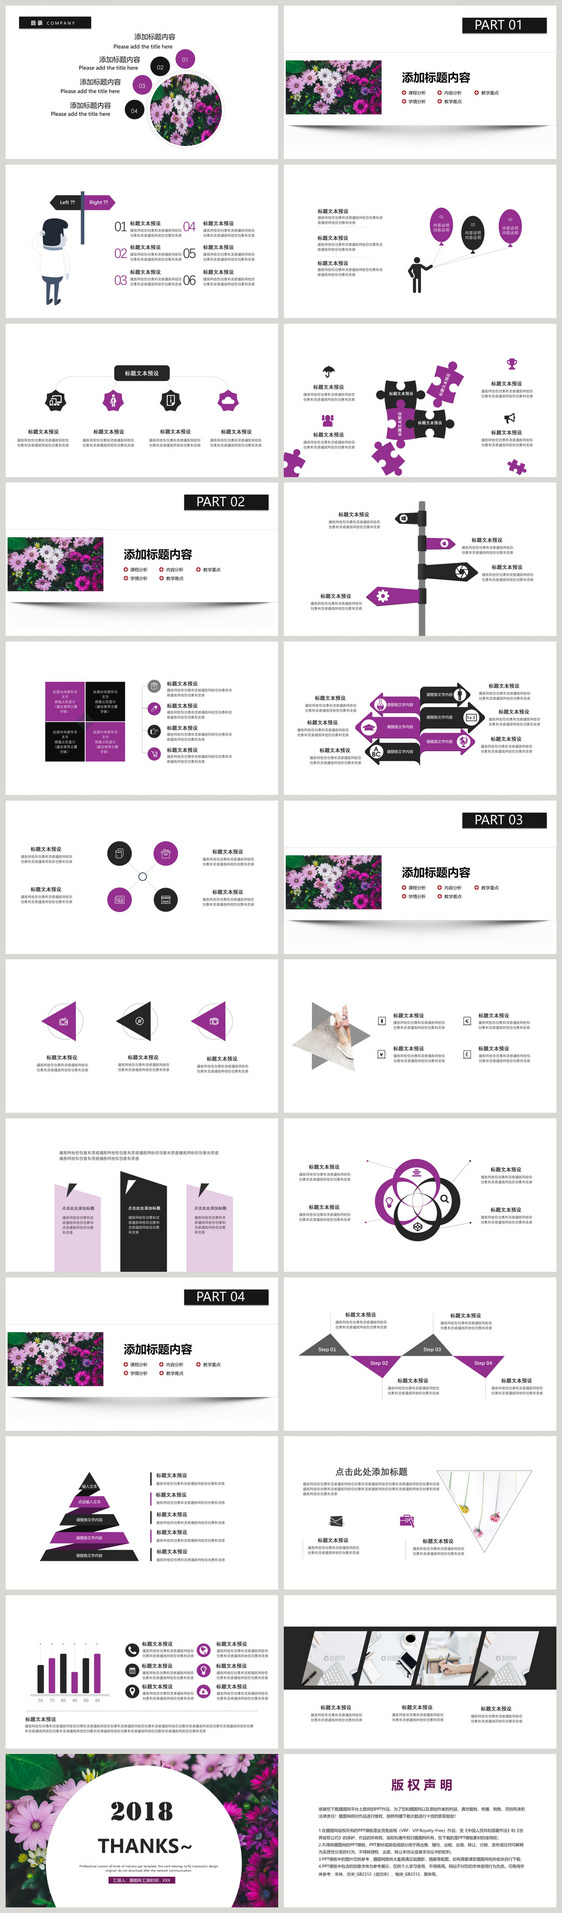 紫色简洁唯美职业规划PPT模板-36